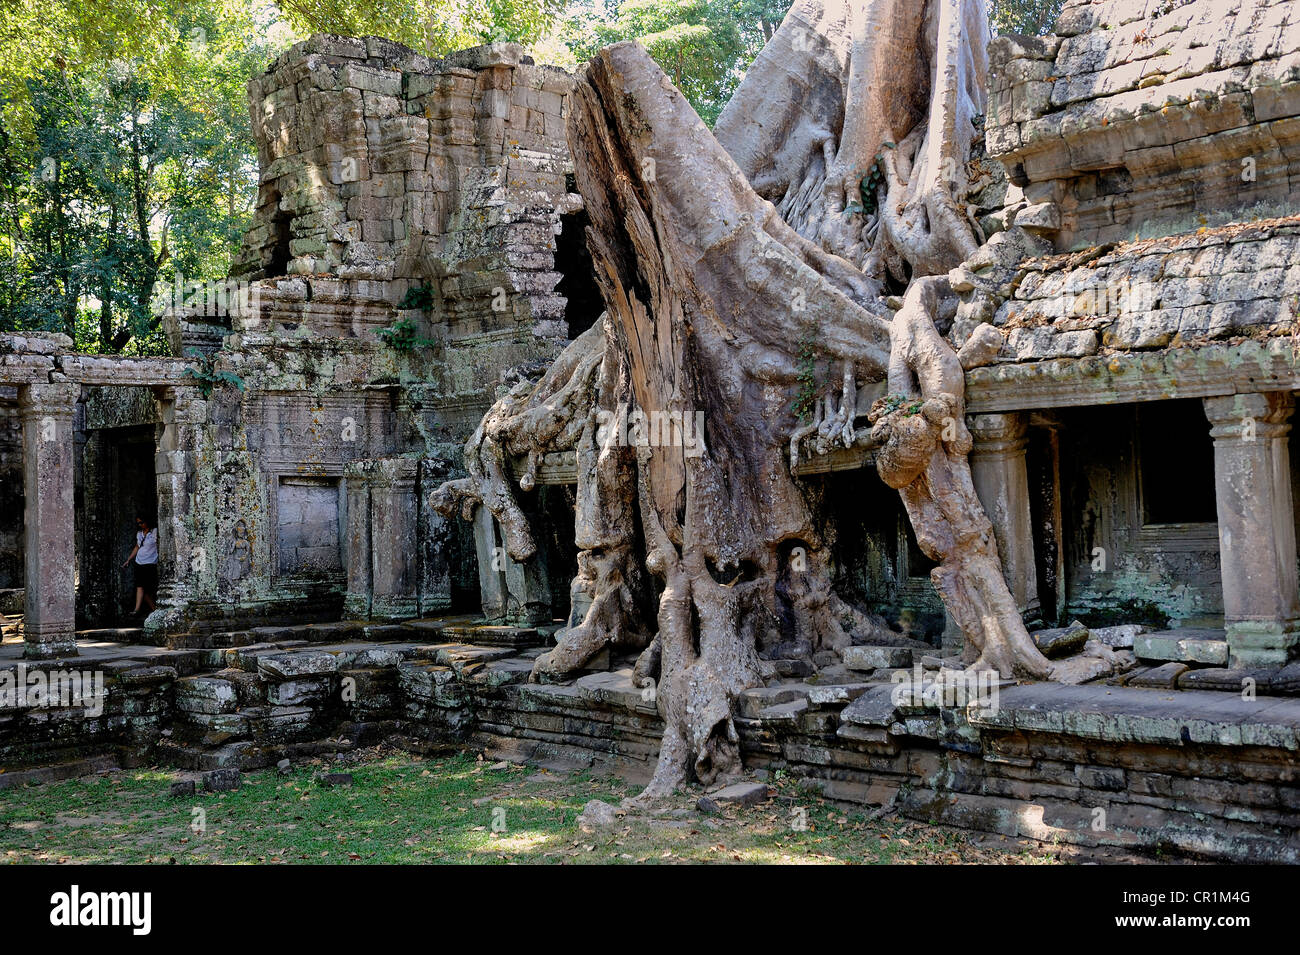 Les racines des arbres, Tetrameles nudiflora Tetrameles (arbre), ses racines aériennes couvrant une partie de la Ta Prohm temple dans le patrimoine archéologique Banque D'Images